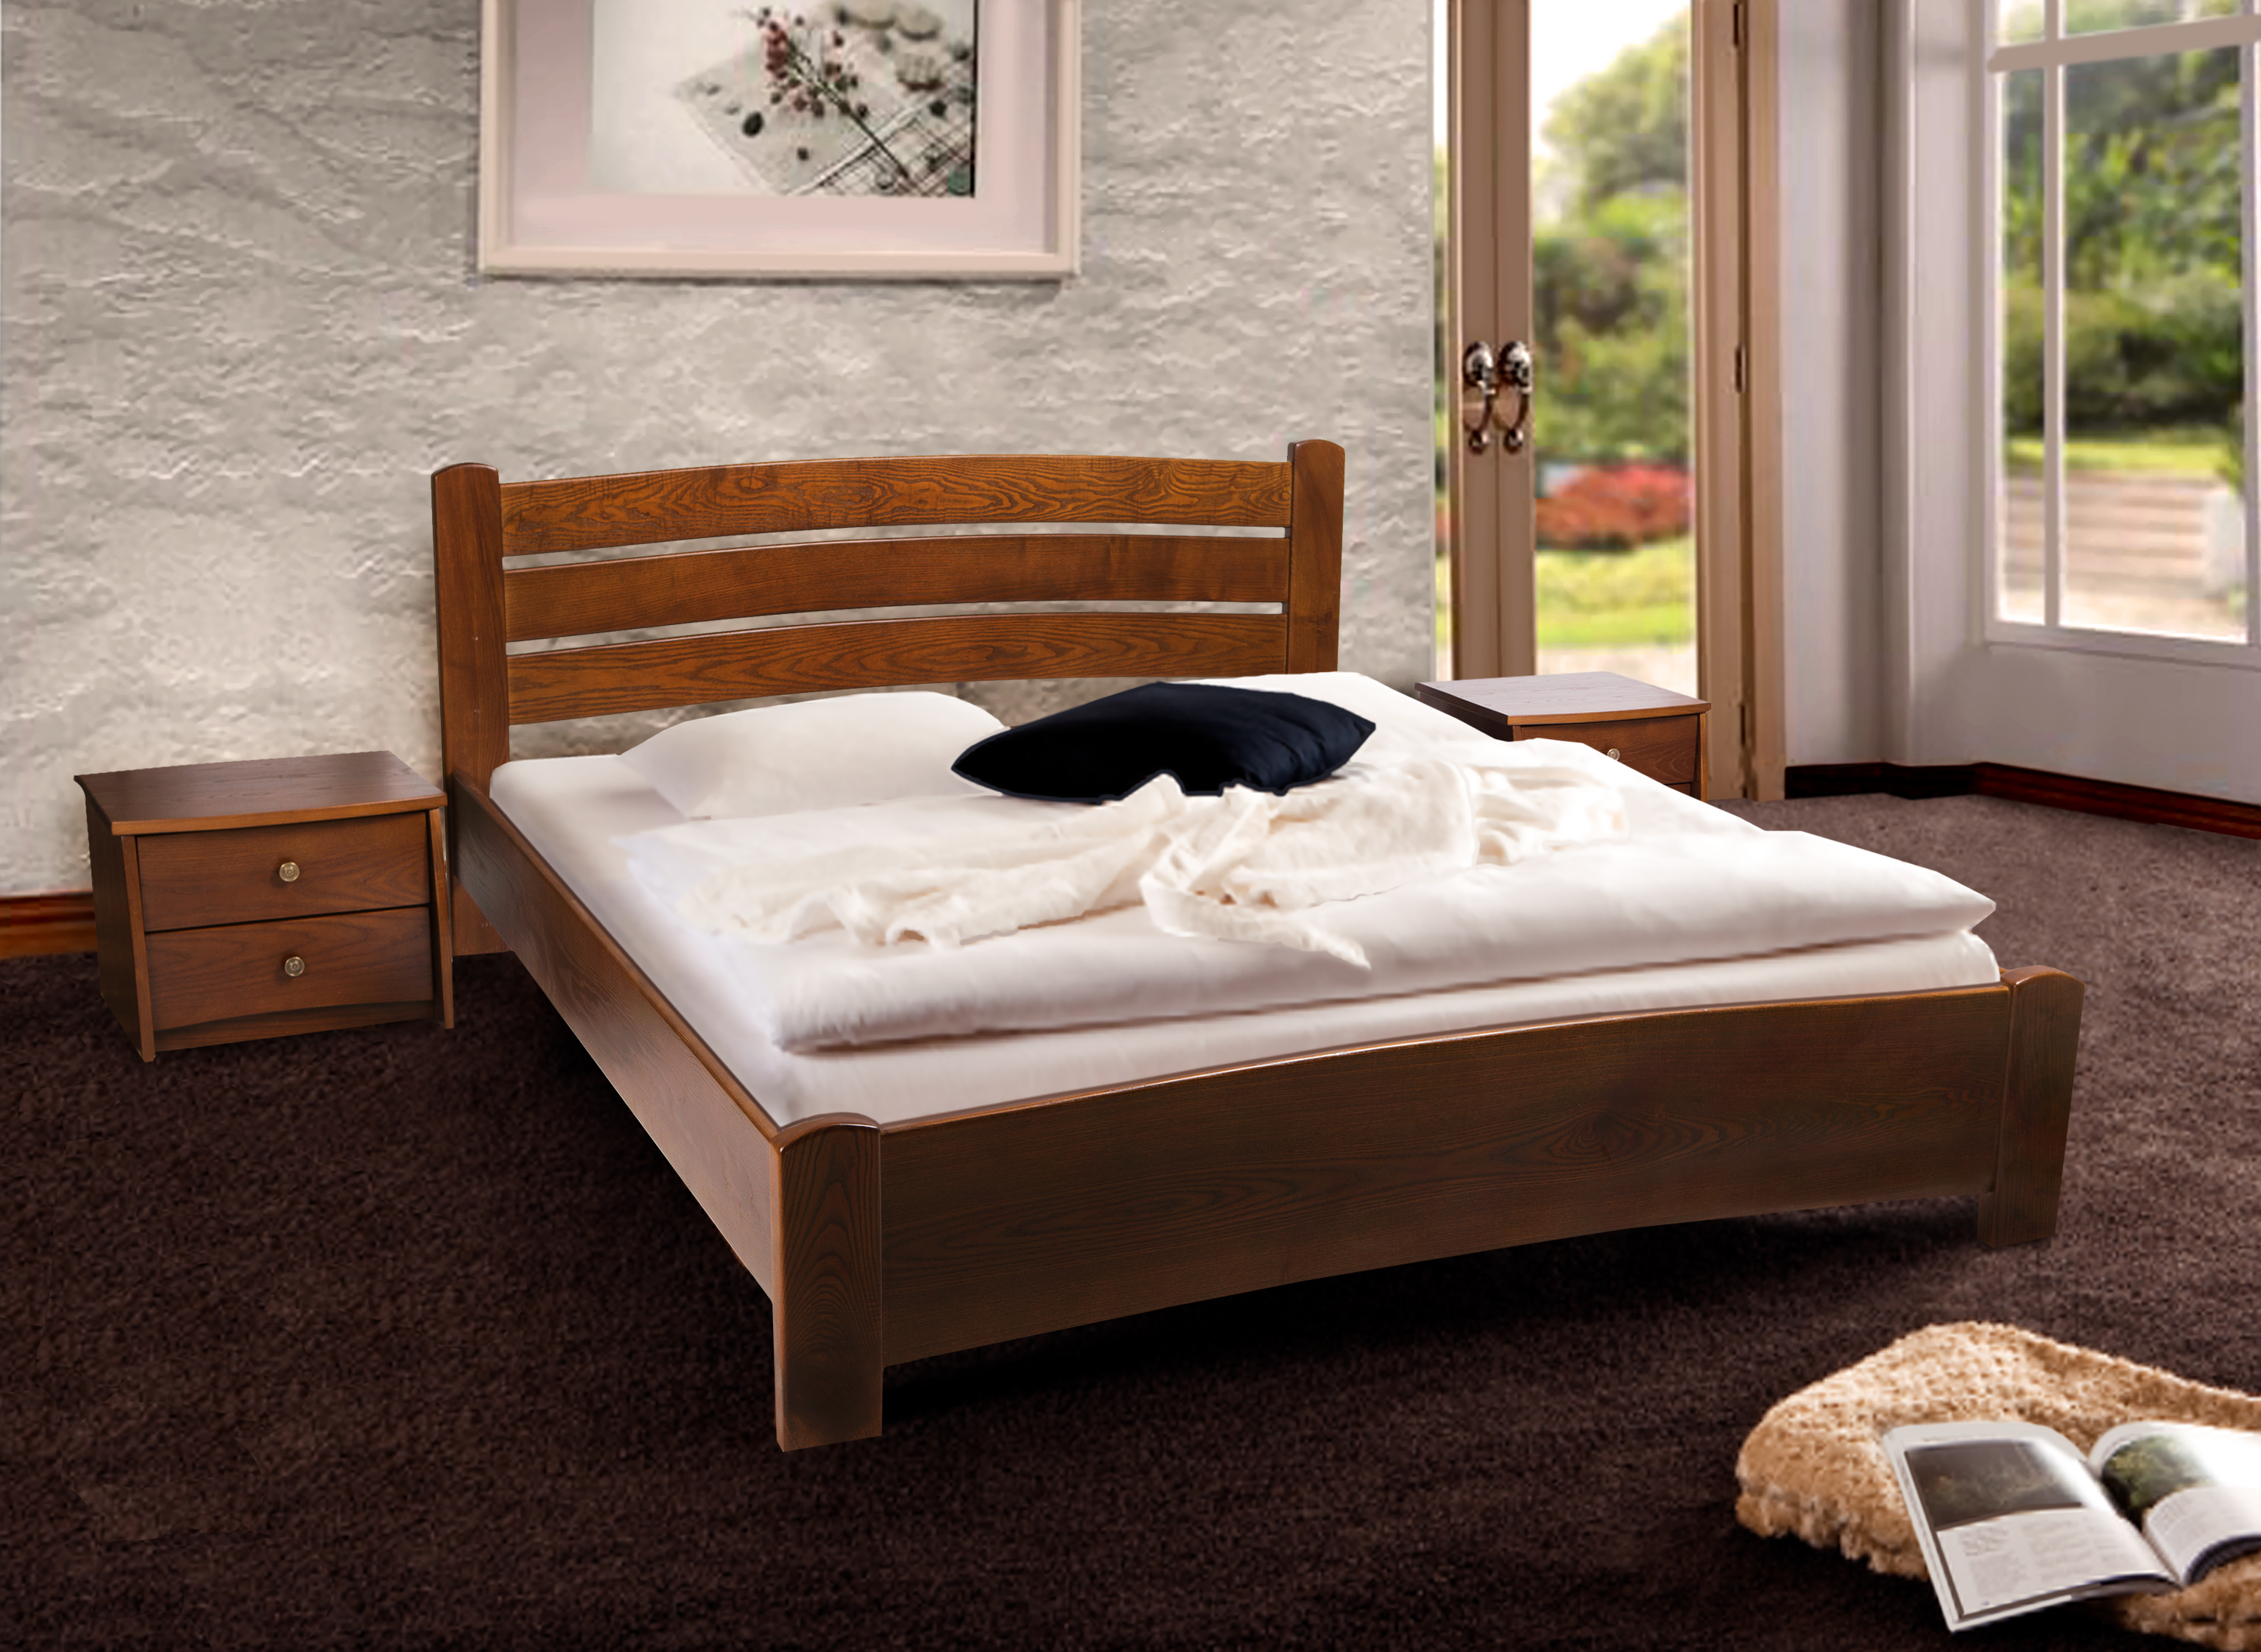 Качественная двуспальная деревянная кровать